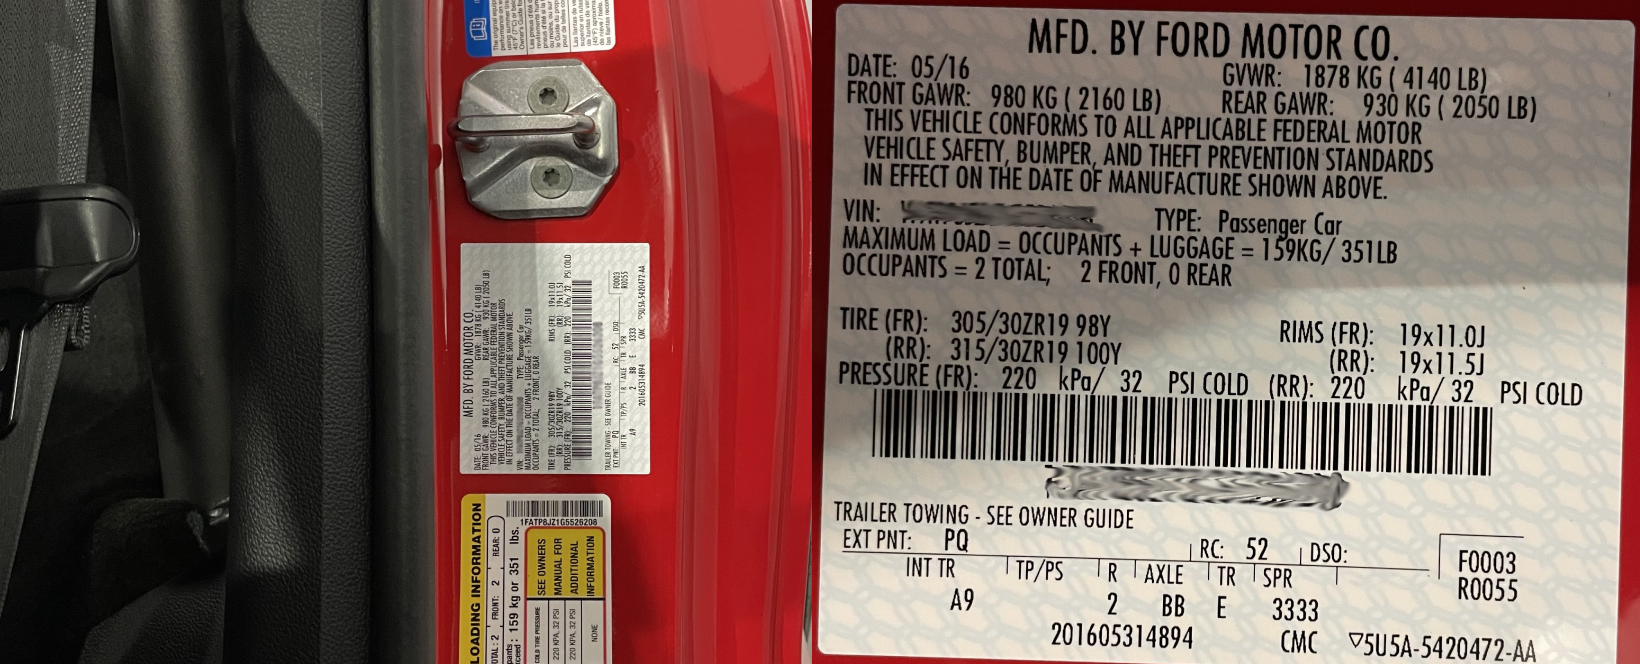 S550 Mustang Paint Codes | 2015-21 - S550 Mustang Paint Codes | 2015-21